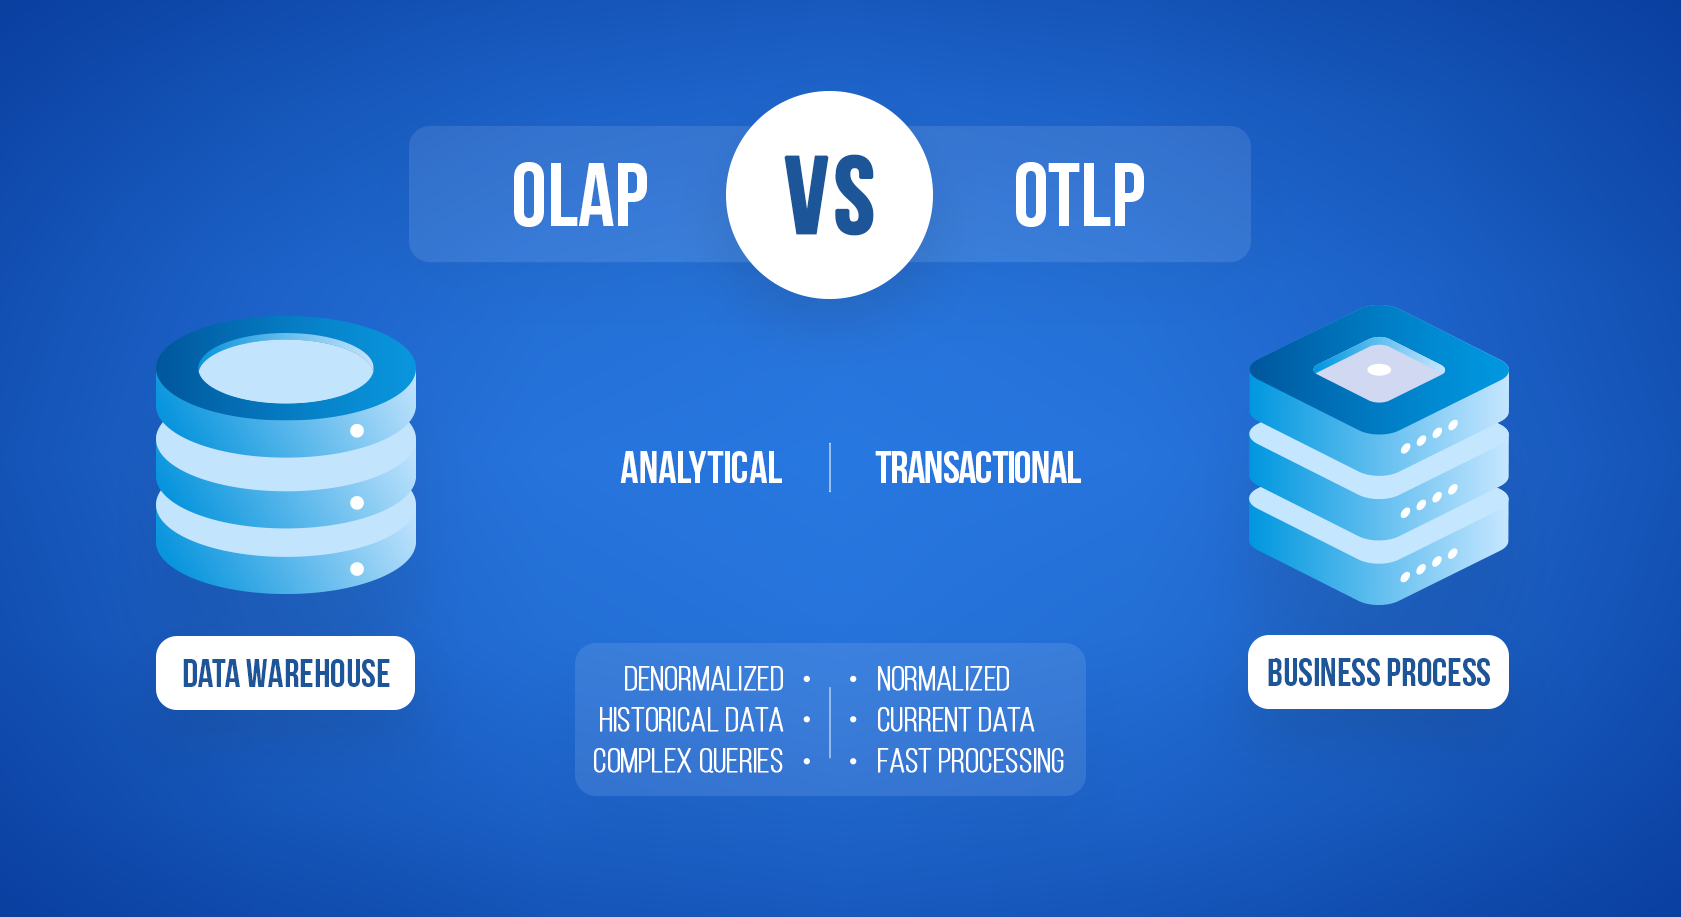 OLAP vs OLTP